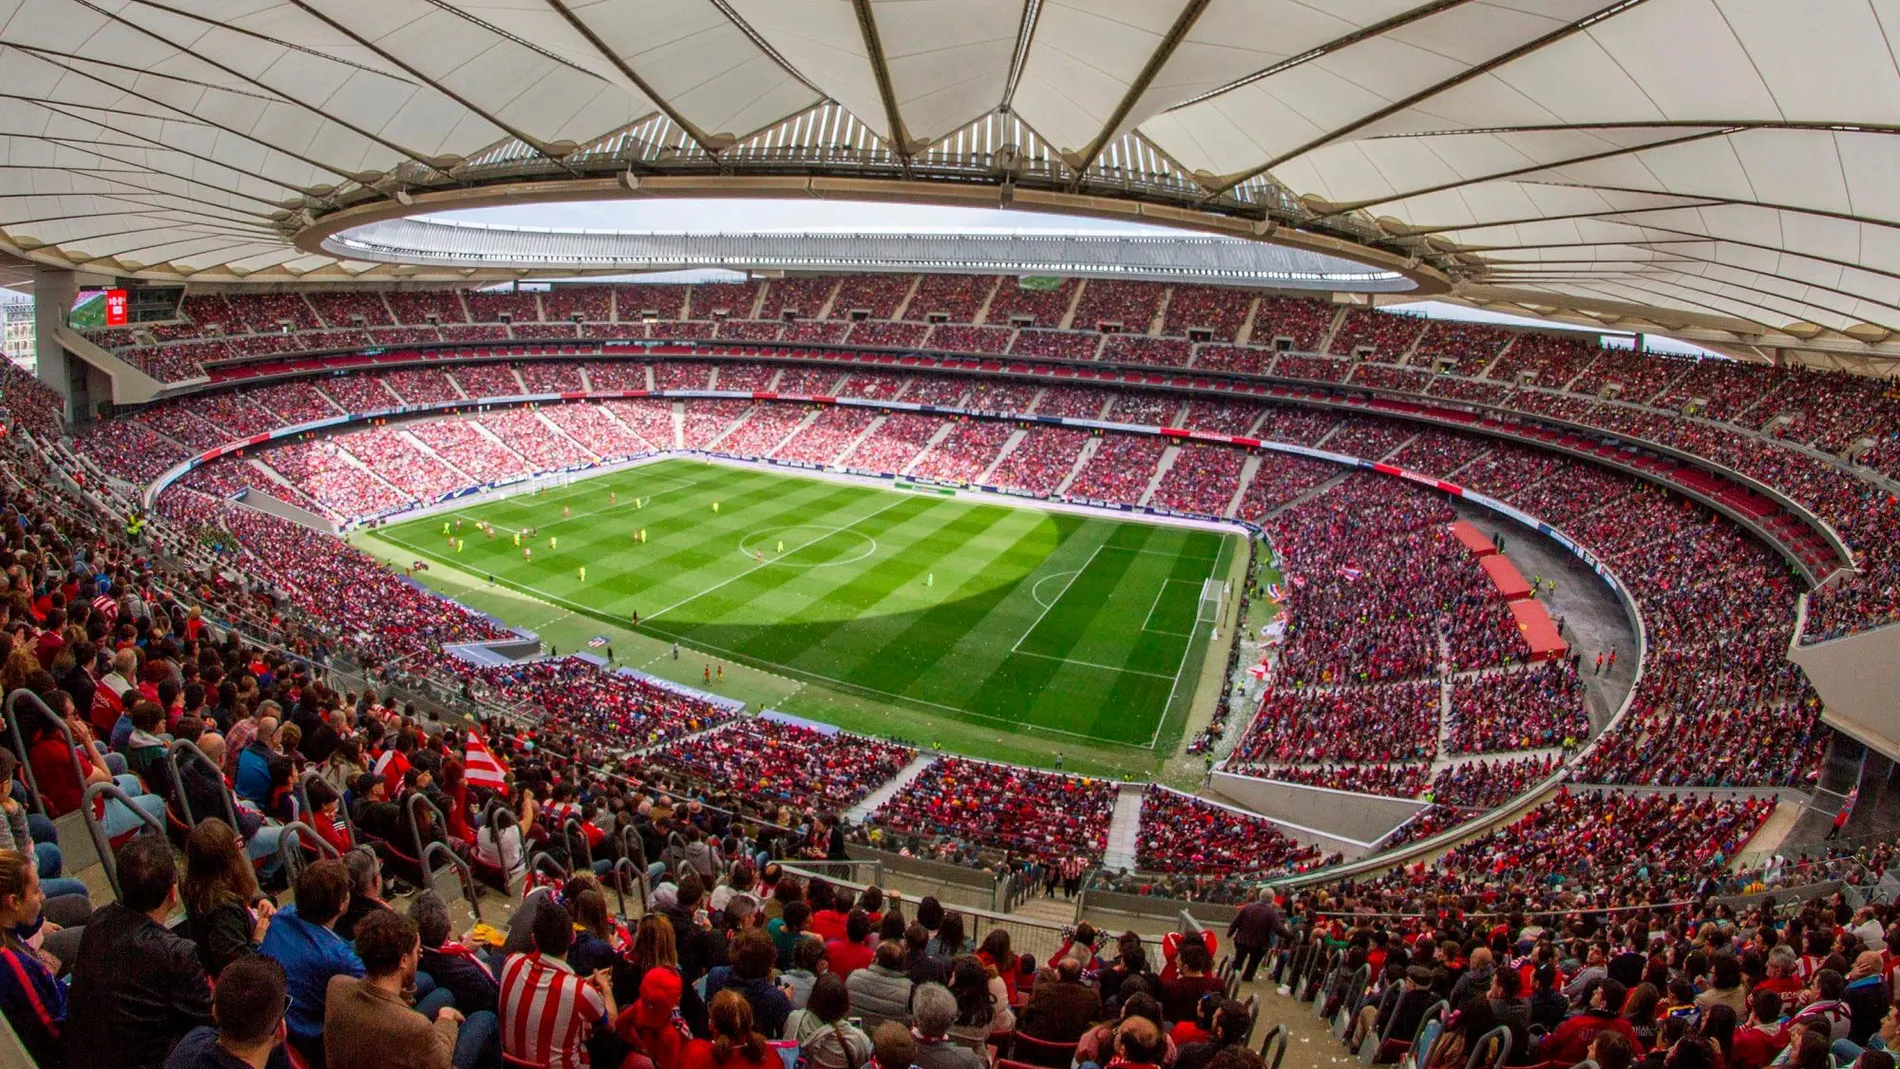 Con 60.739 espectadores en las gradas, el Wanda Metropolitano logró este domingo el récord de asistencia a un partido de fútbol femenino en España